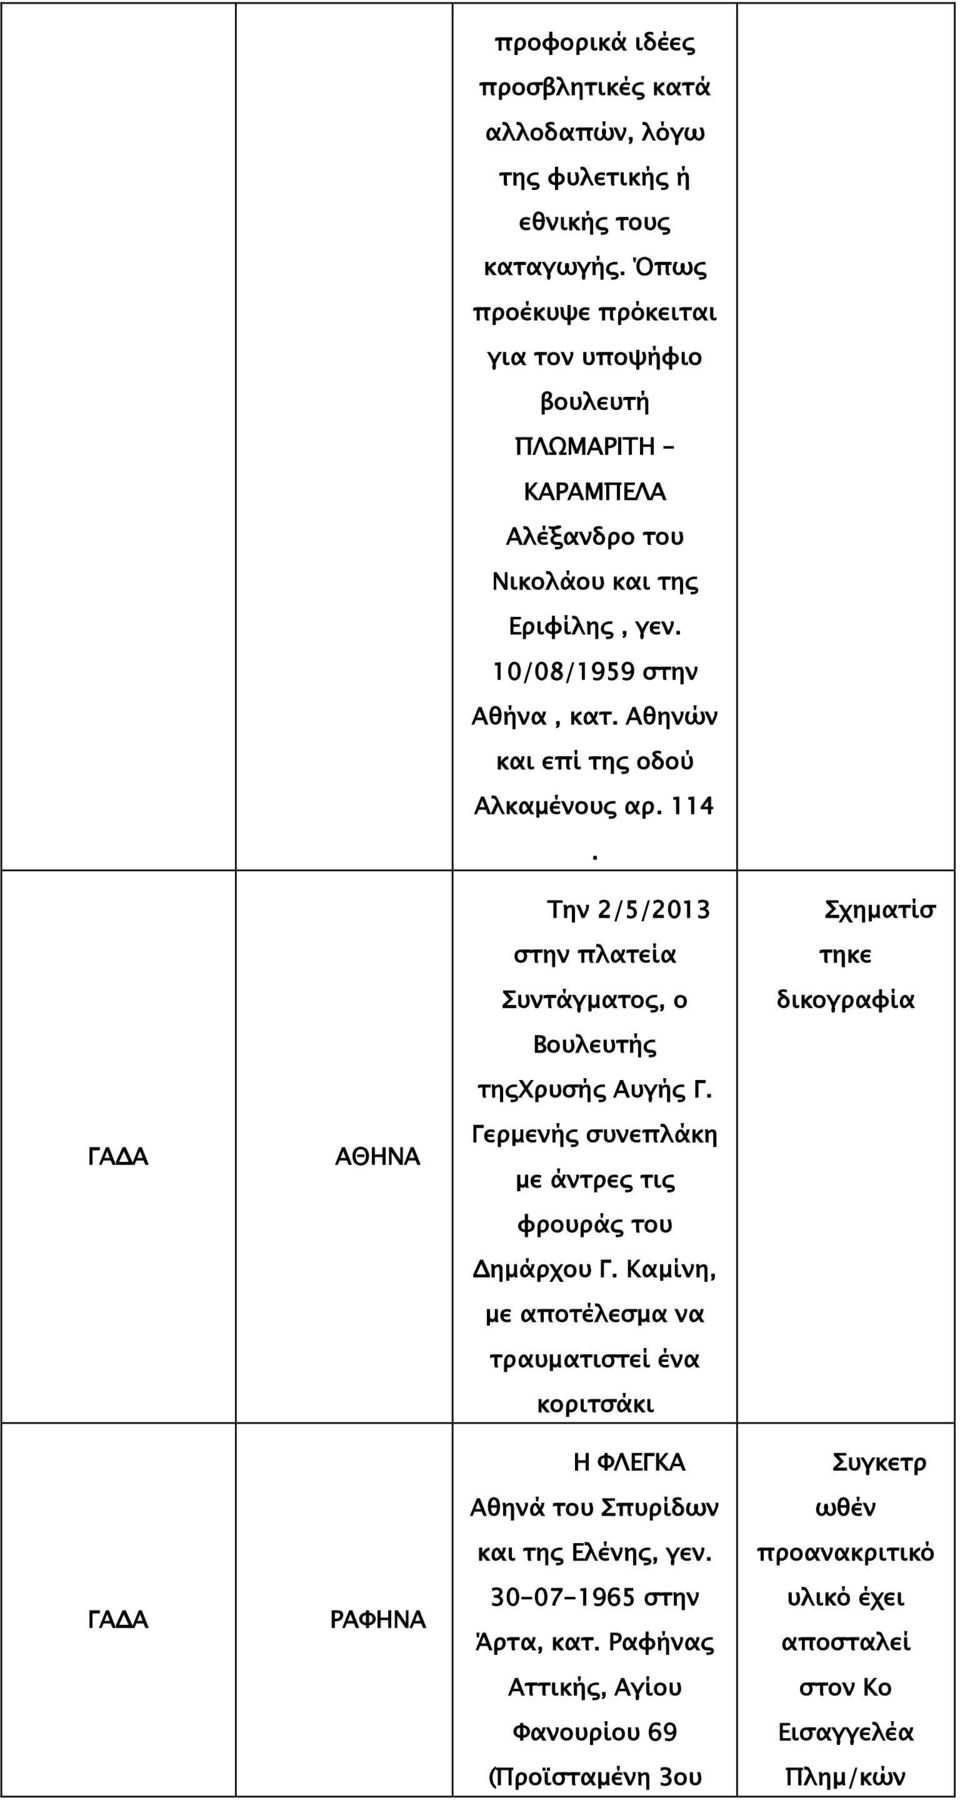 Αθηνών και επί της οδού Αλκαμένους αρ. 114. 2/5/2013 στην πλατεία Συντάγματος, ο Βουλευτής τηςχρυσής Αυγής Γ.